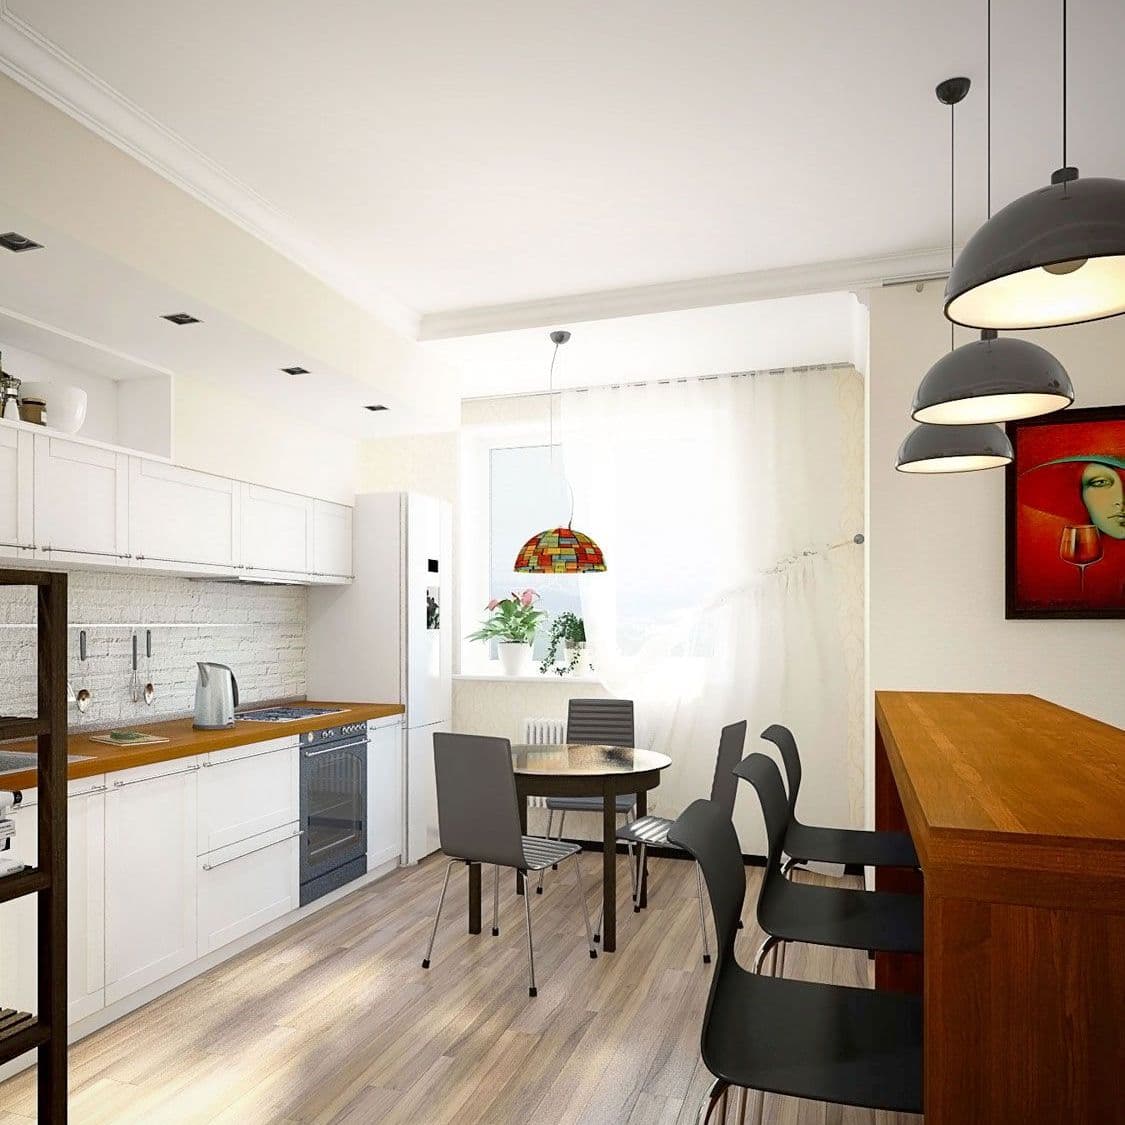 Дизайн интерьера однокомнатной квартиры в скандинавском стиле с яркими акцентами, белой кухней, круглым столом и барной стойкой